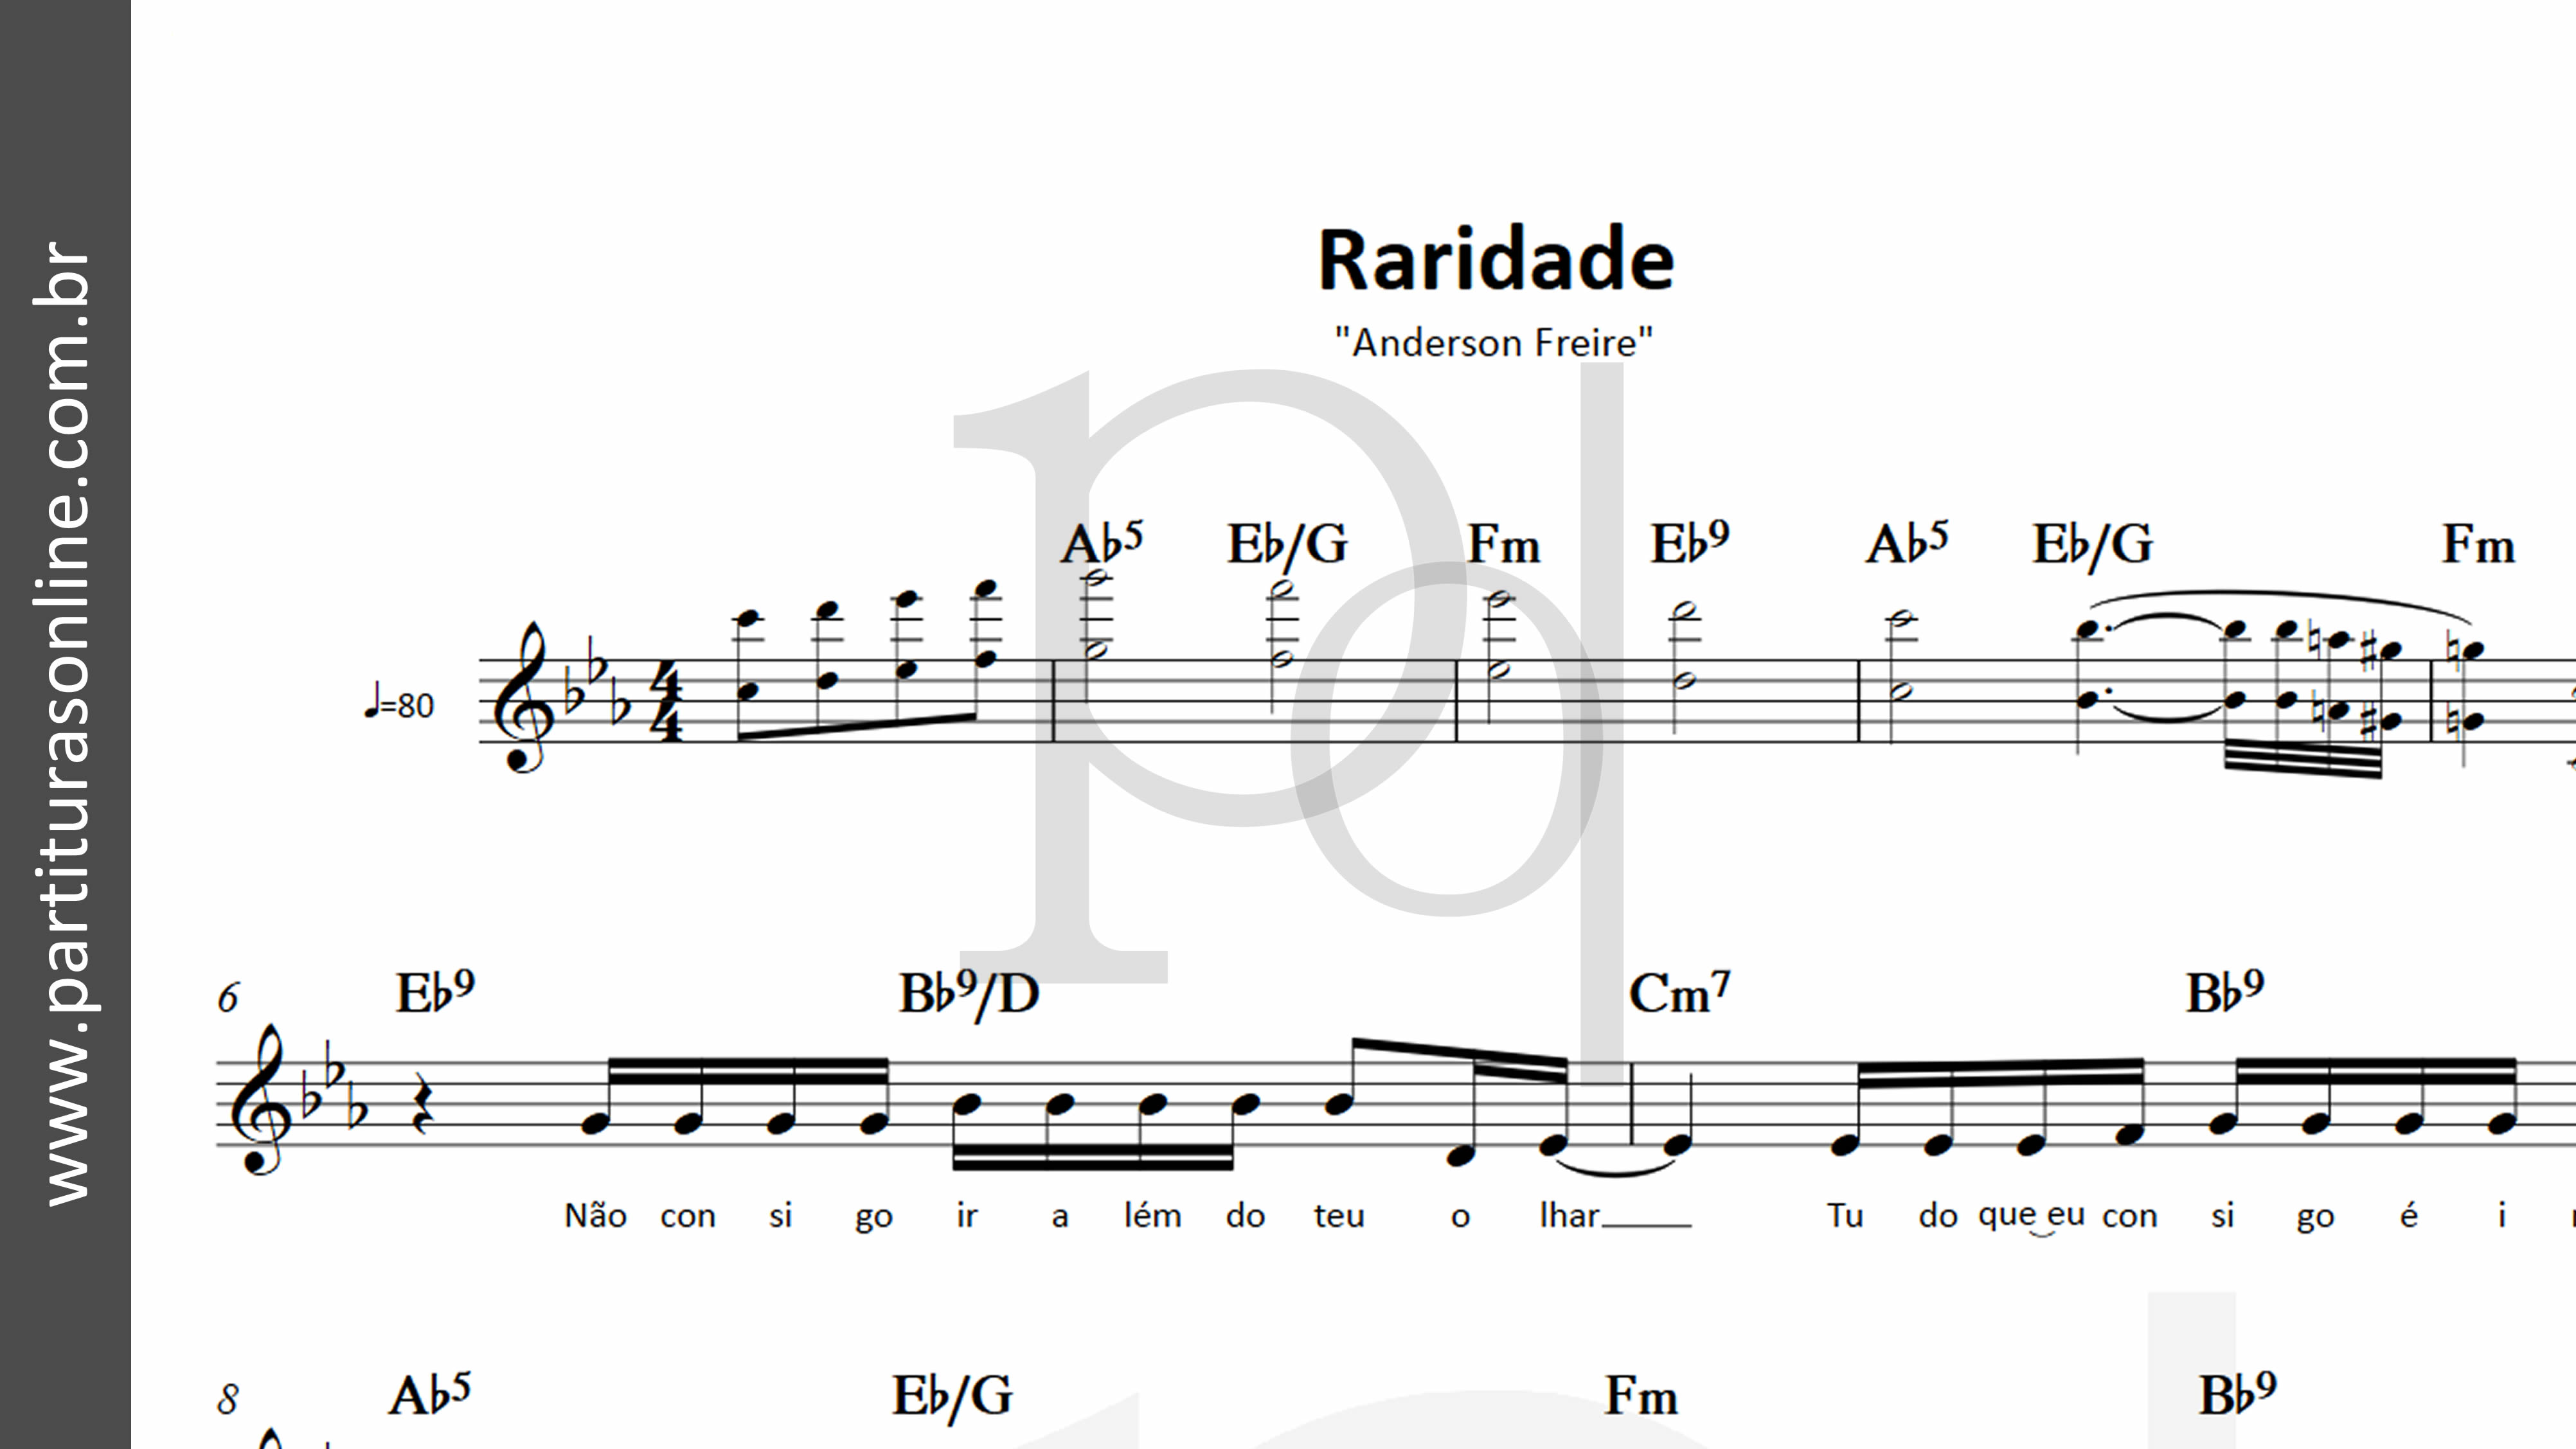 Anderson Freire - Raridade - Cifra Club PDF